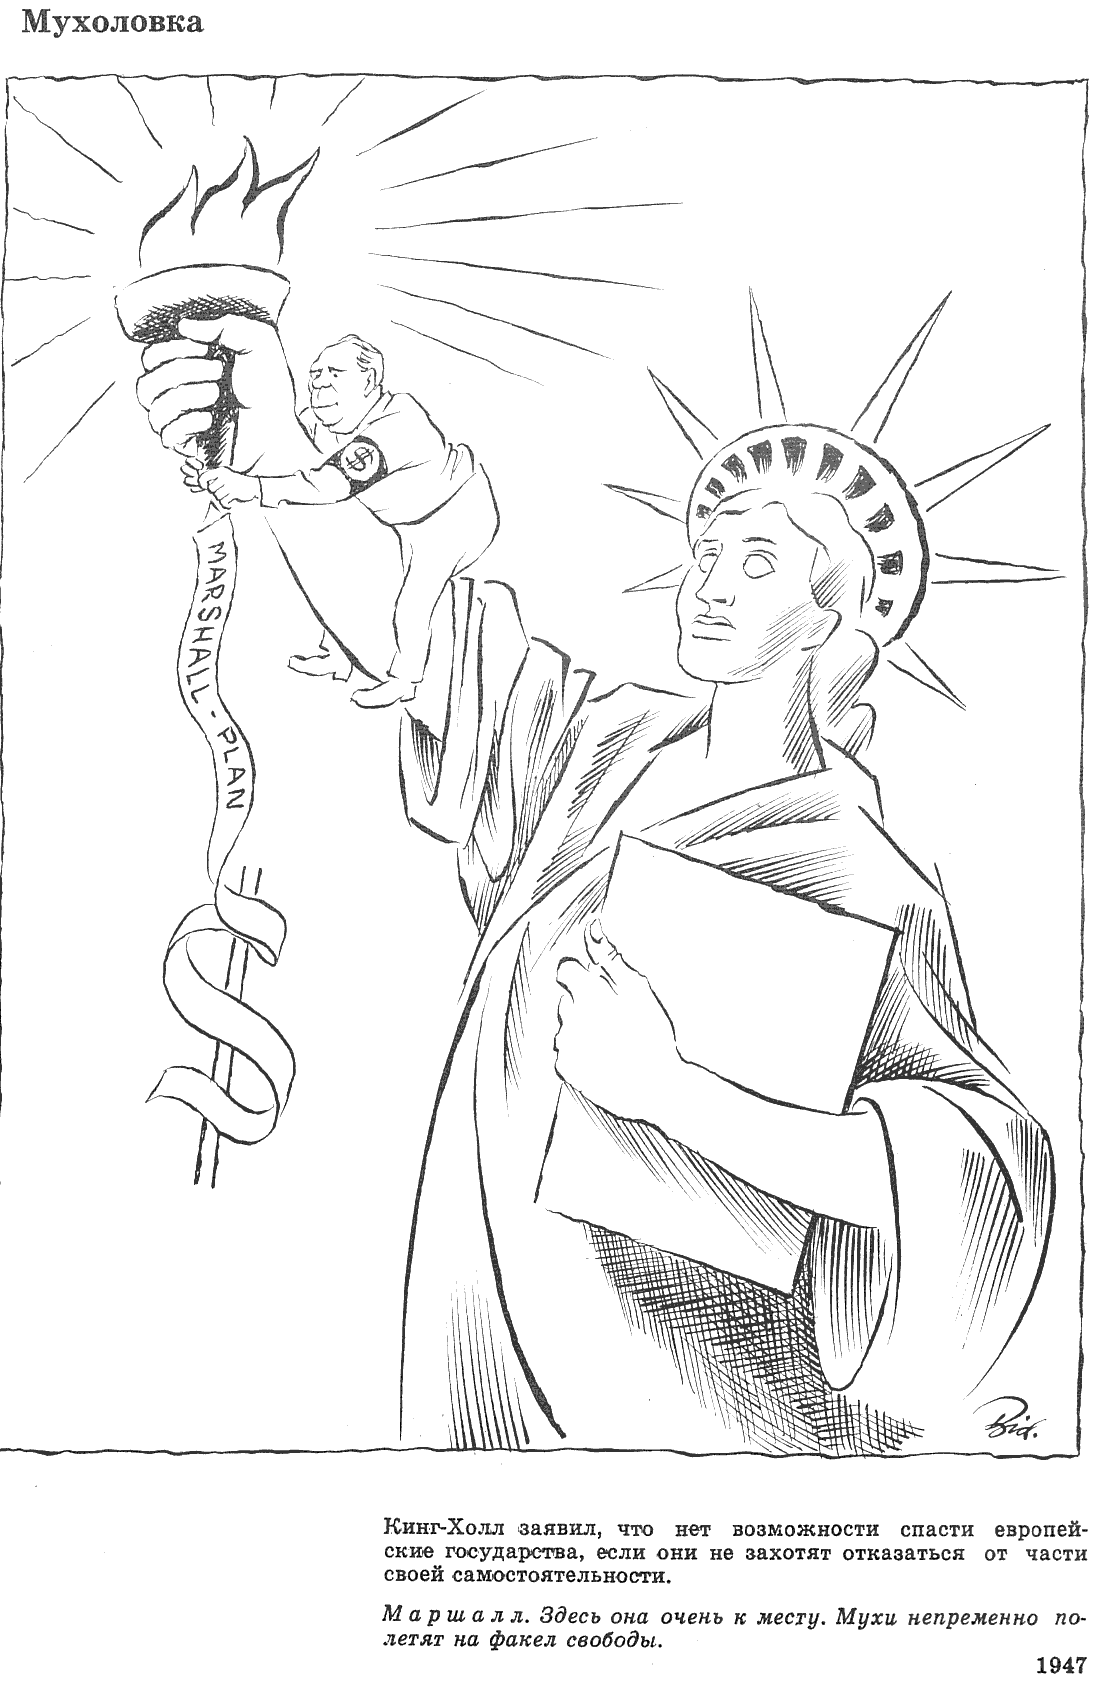 Херлуф Бидструп - датский карикатурист середины прошлого века Бидструп, карикатура height=1228